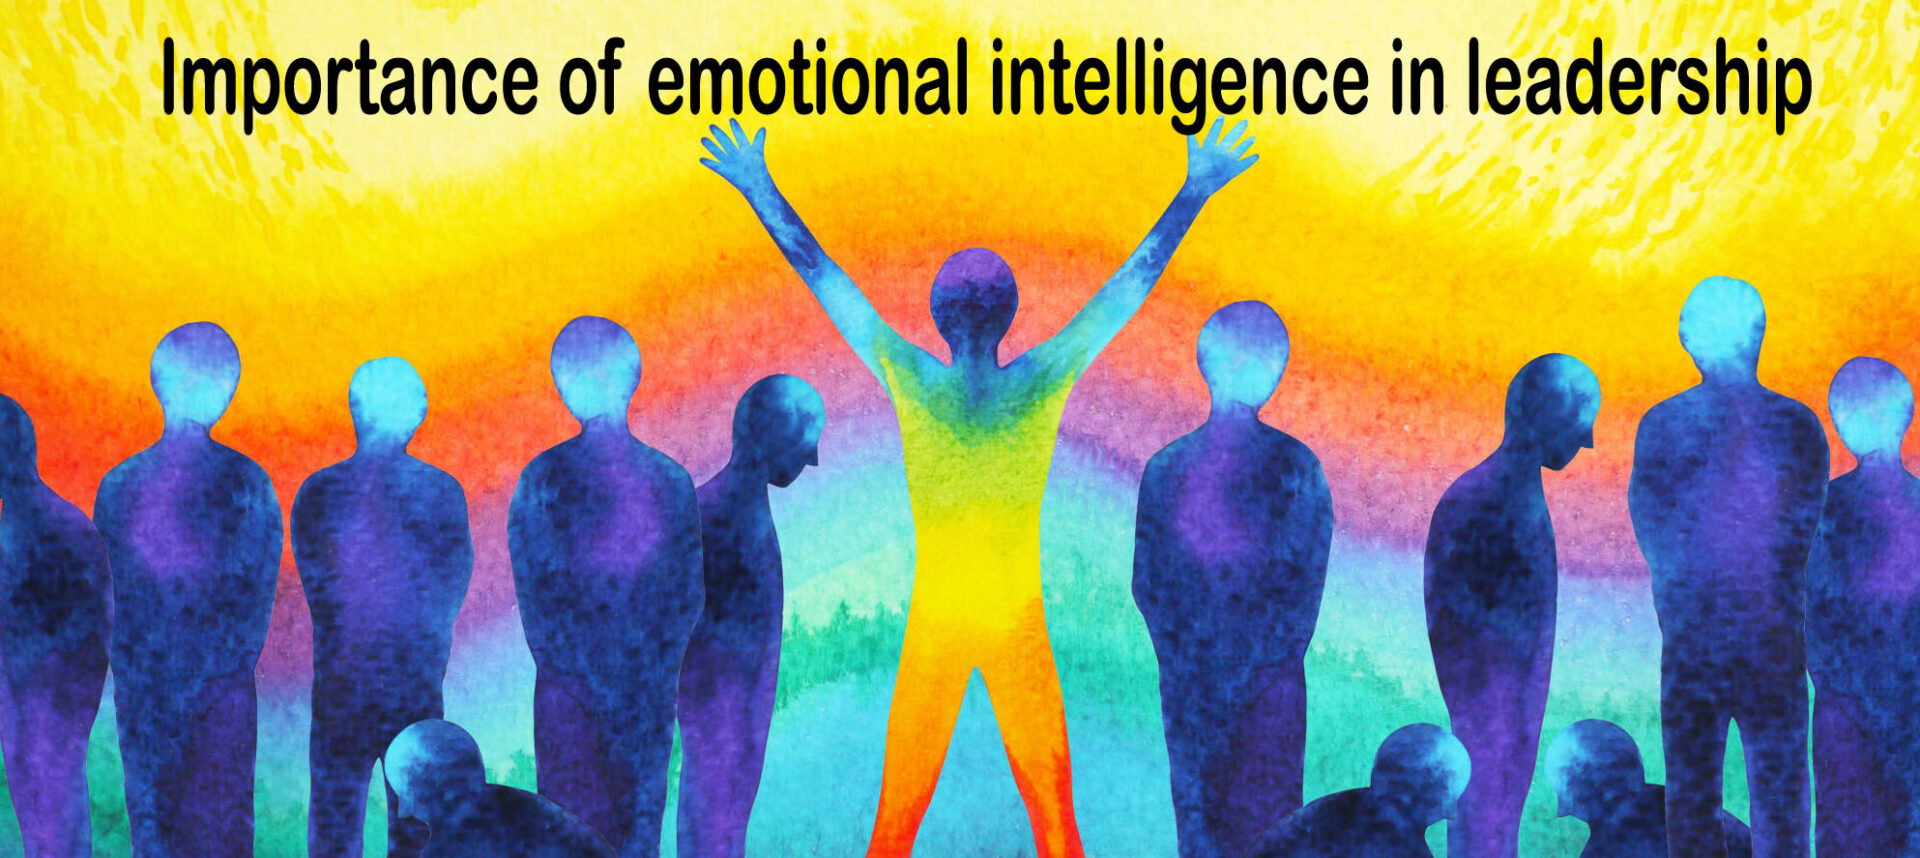 emotional intelligence leadership case study